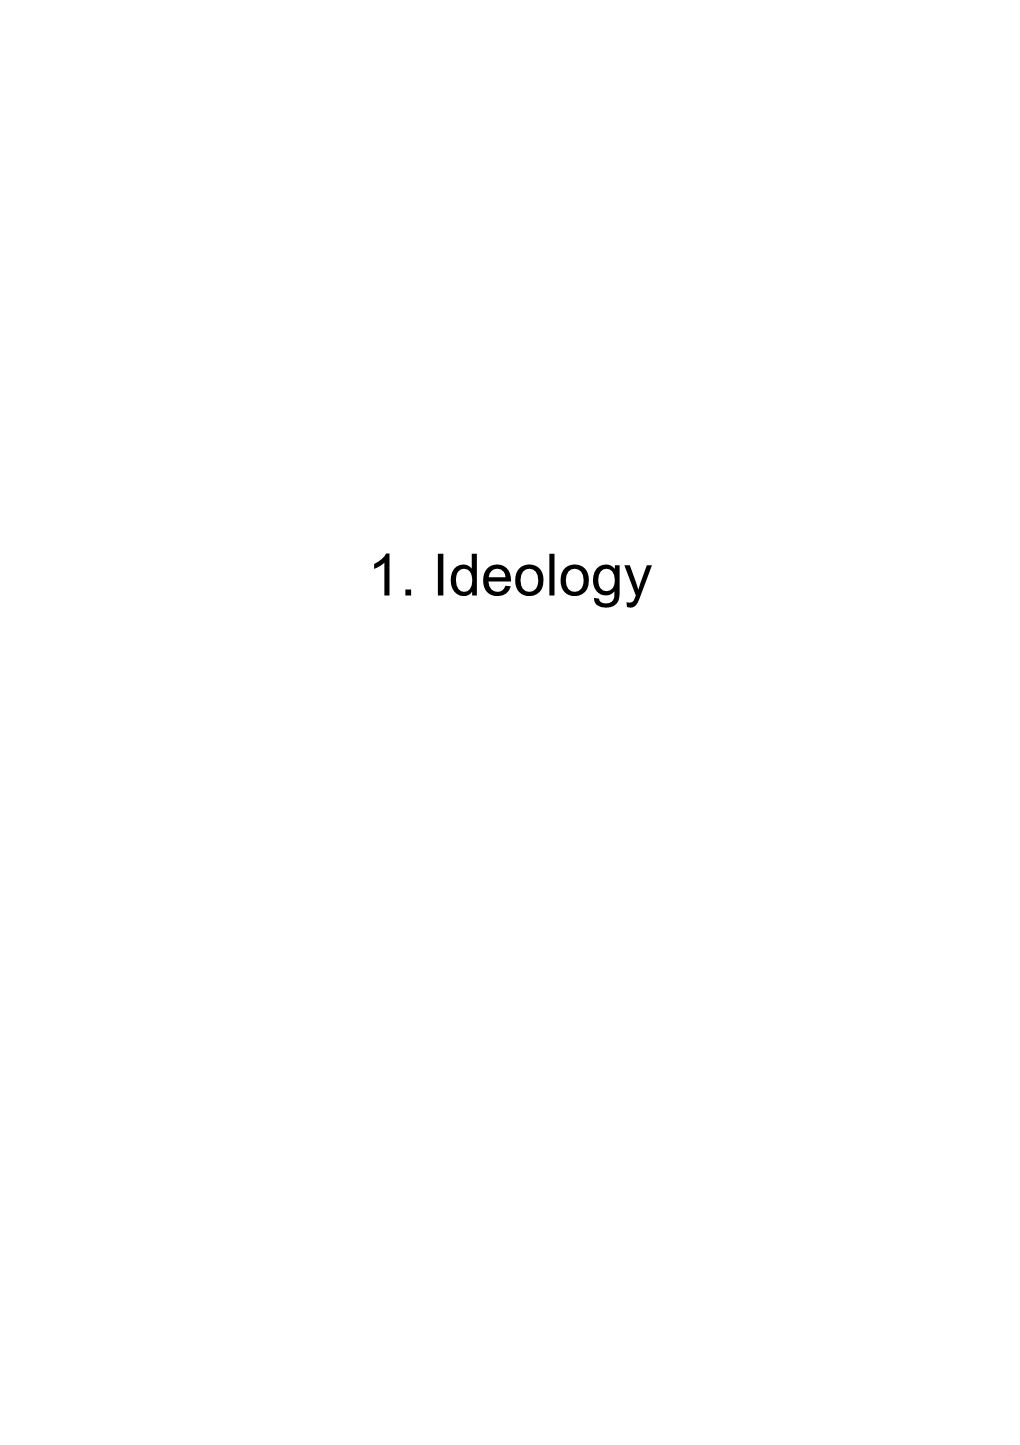 1.1 Kreutz Ideology